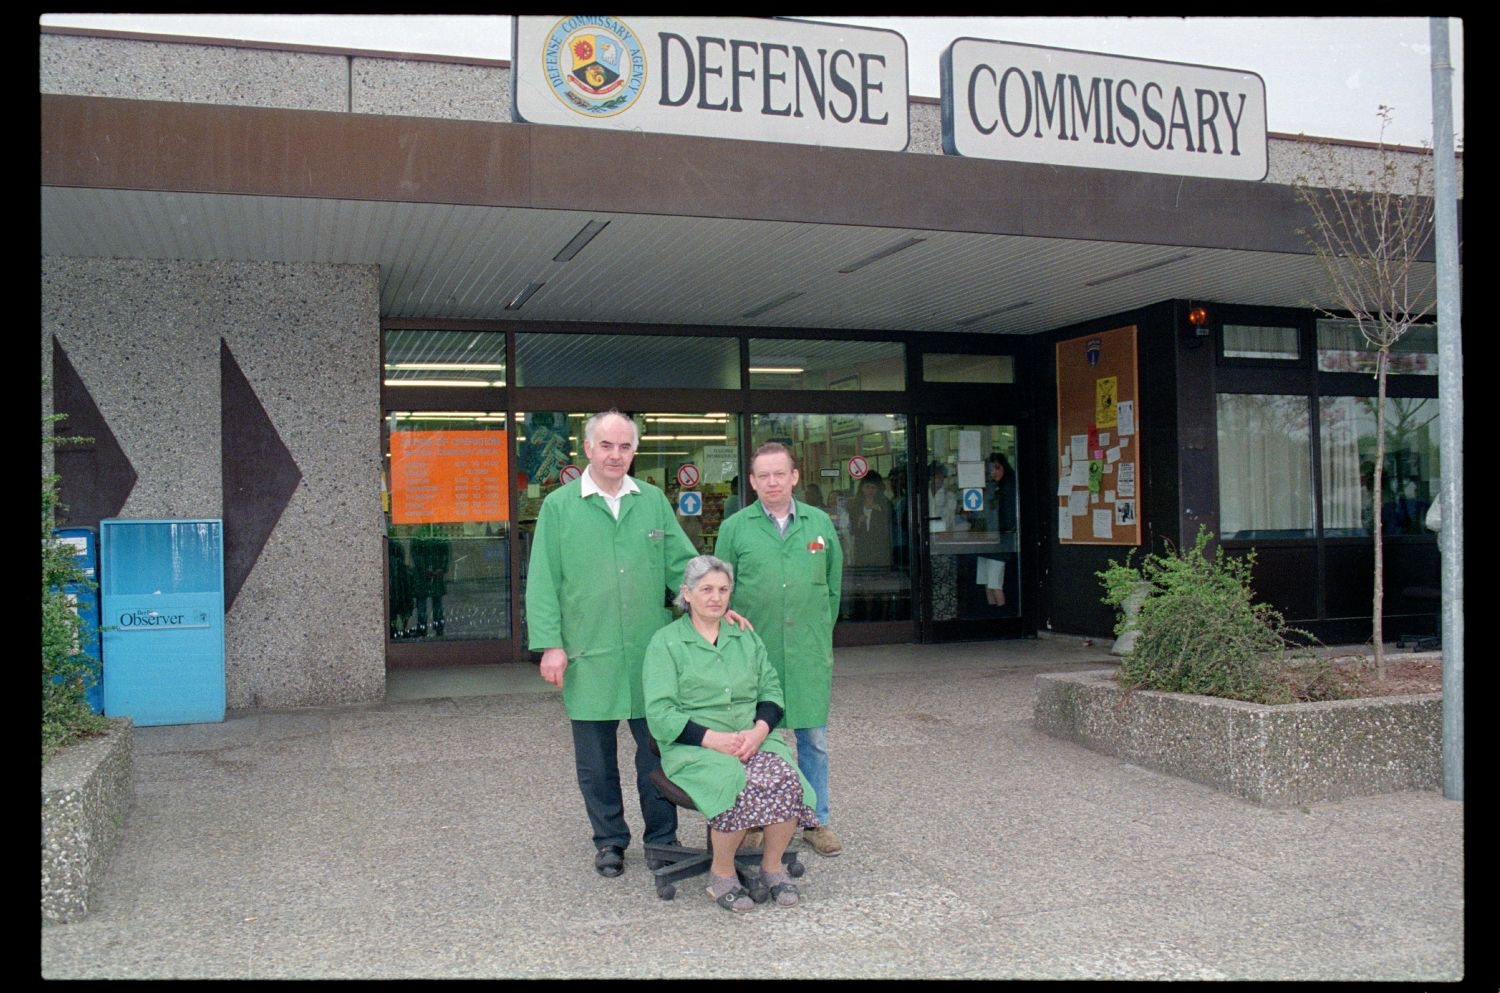 Fotografie: Angestellte des Defense Commissary im Einkaufszentrum Truman Plaza in Berlin-Dahlem